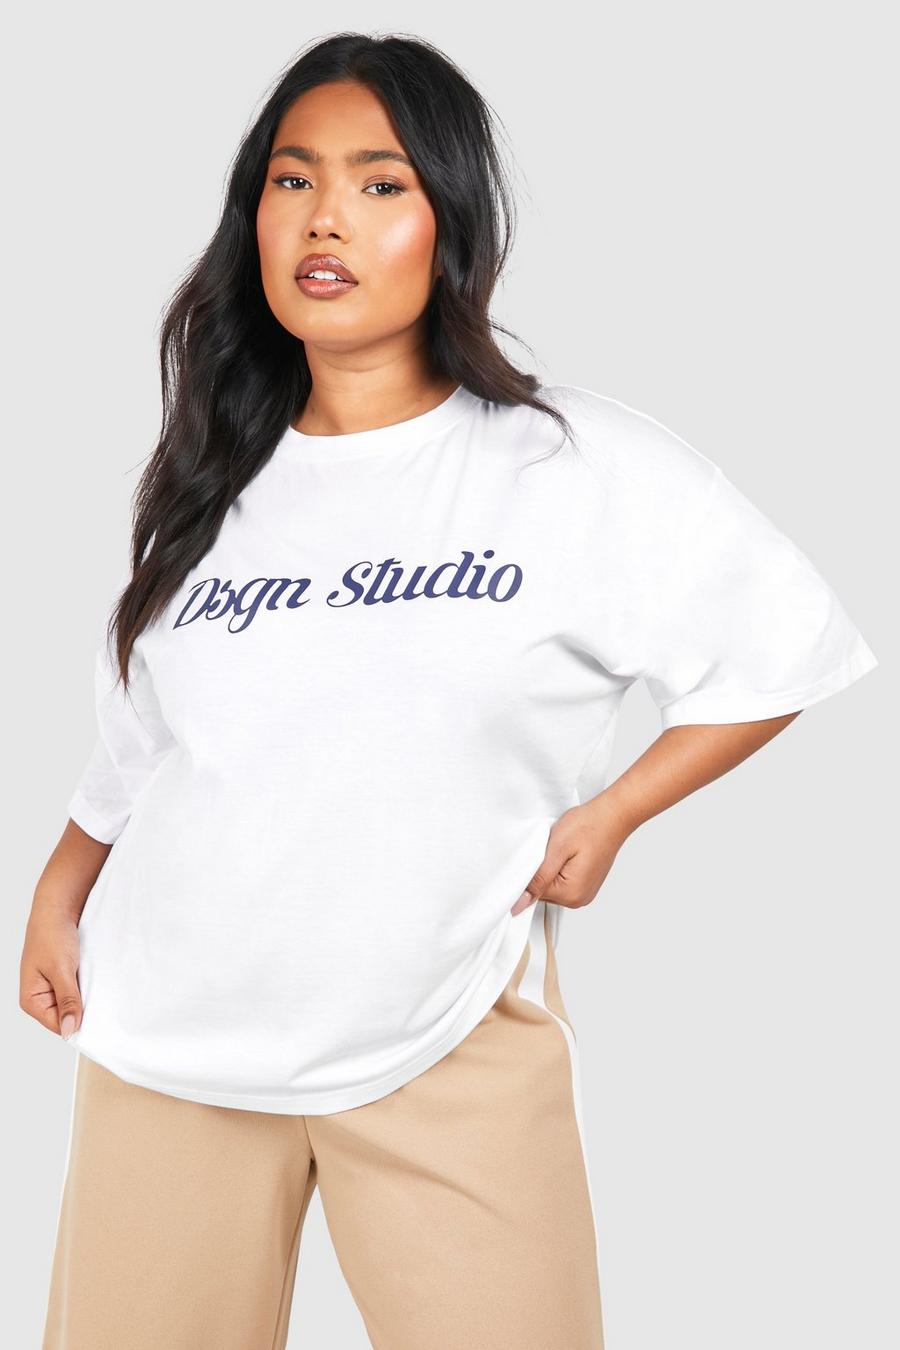 Camiseta Plus oversize con estampado Dsgn Studio, White